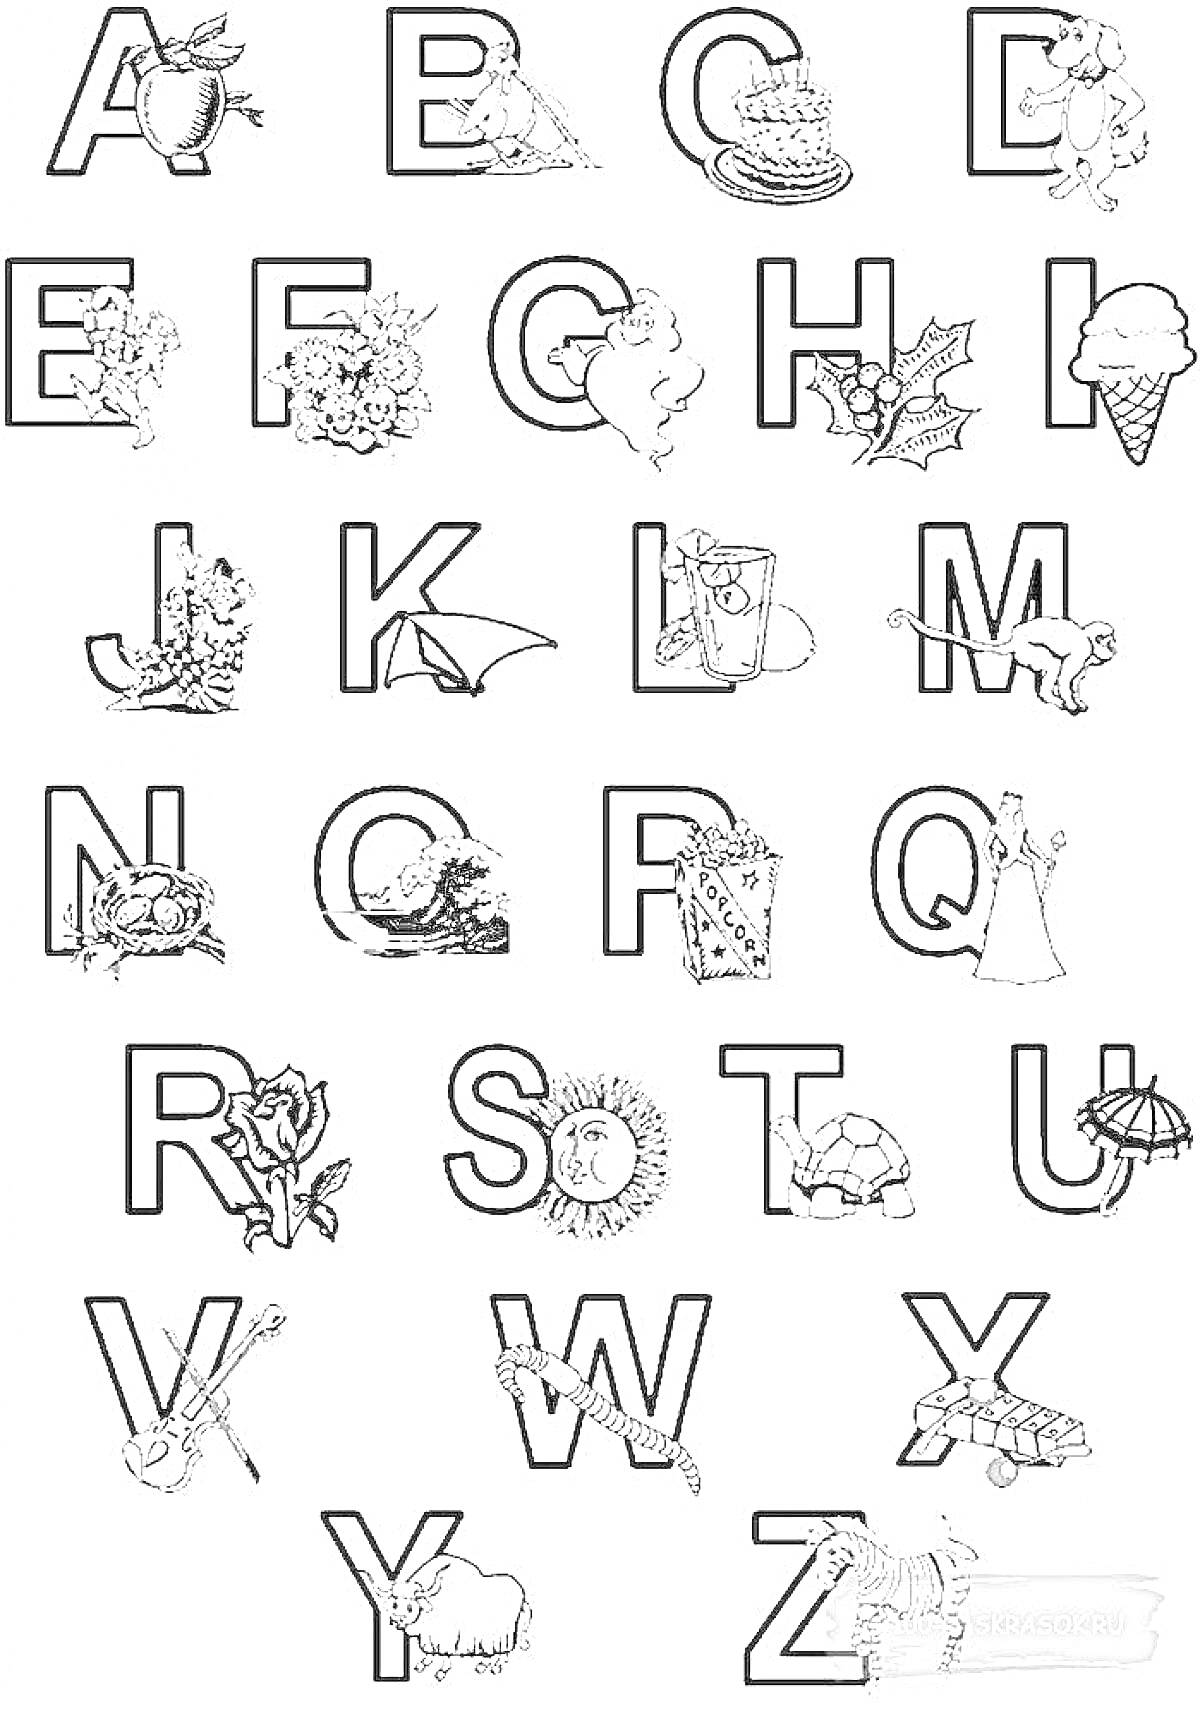 Алфавит с изображениями фруктов, животных и предметов, начинающихся на соответствующие буквы.